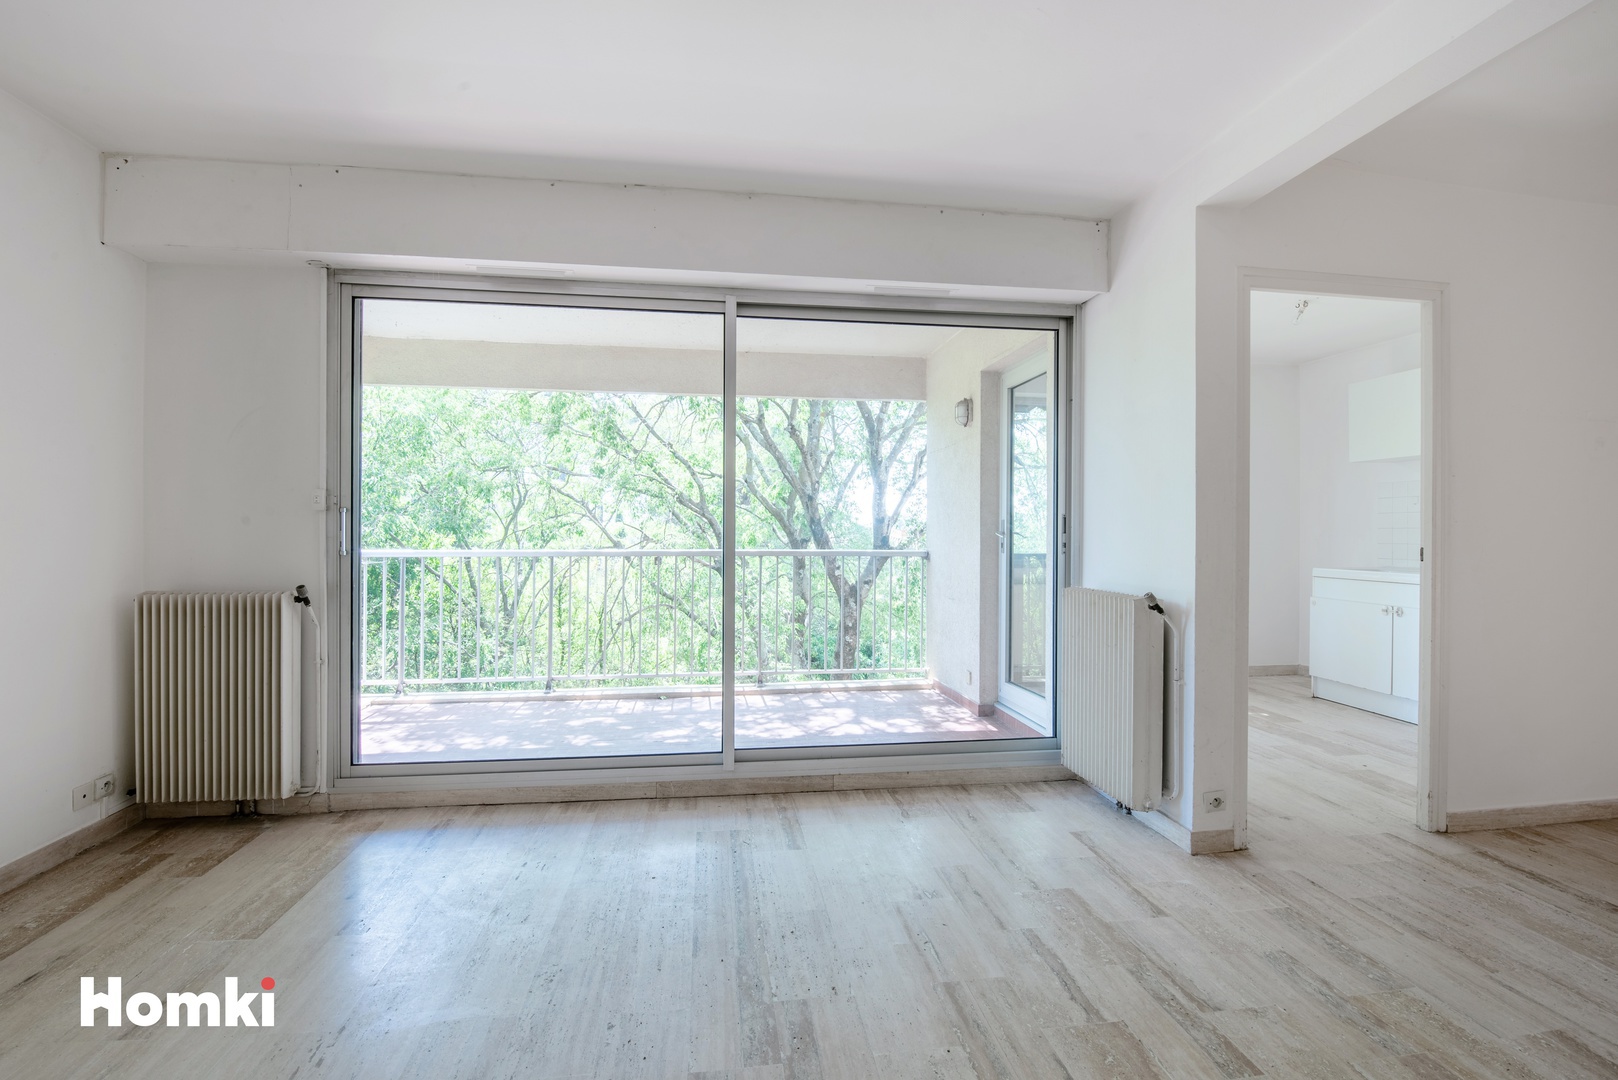 Homki - Vente Appartement  de 84.0 m² à Montpellier 34090